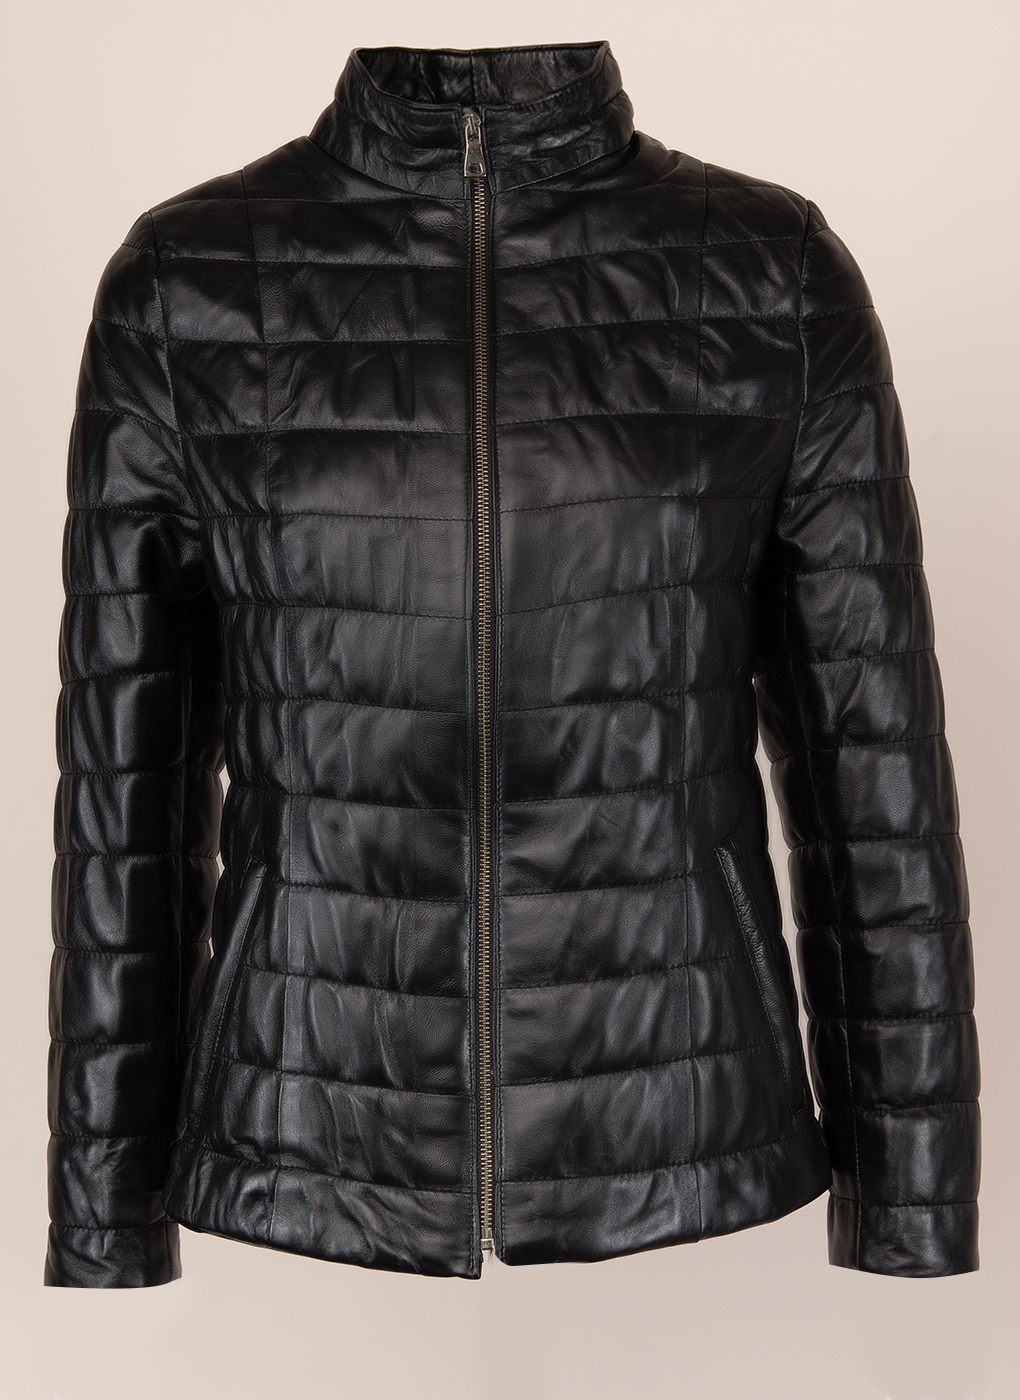 Кожаная куртка женская Каляев 156060 черная 42